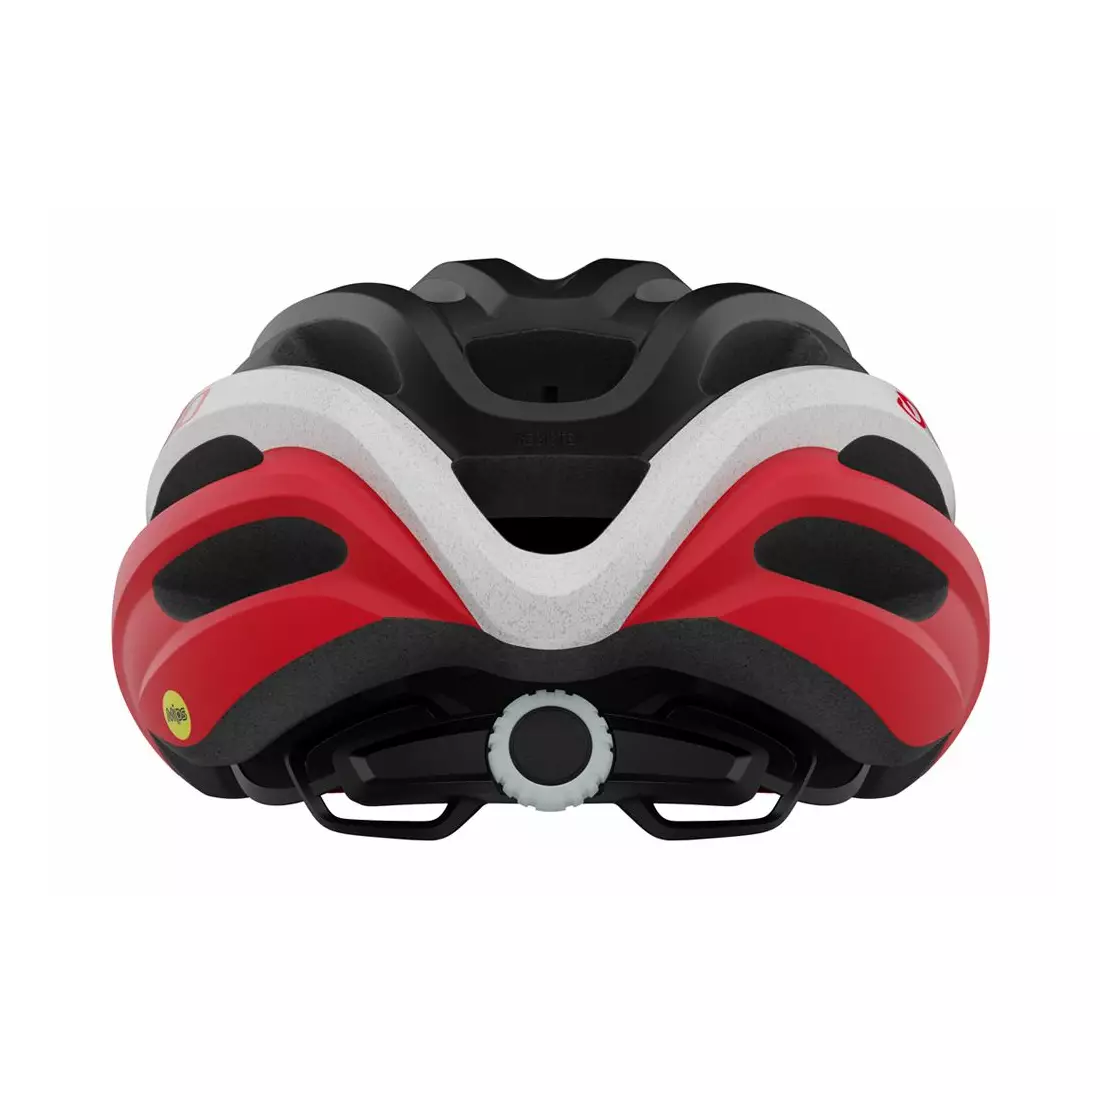 GIRO bicycle helmet mtb REGISTER INTEGRATED MIPS matte black red GR-7129833